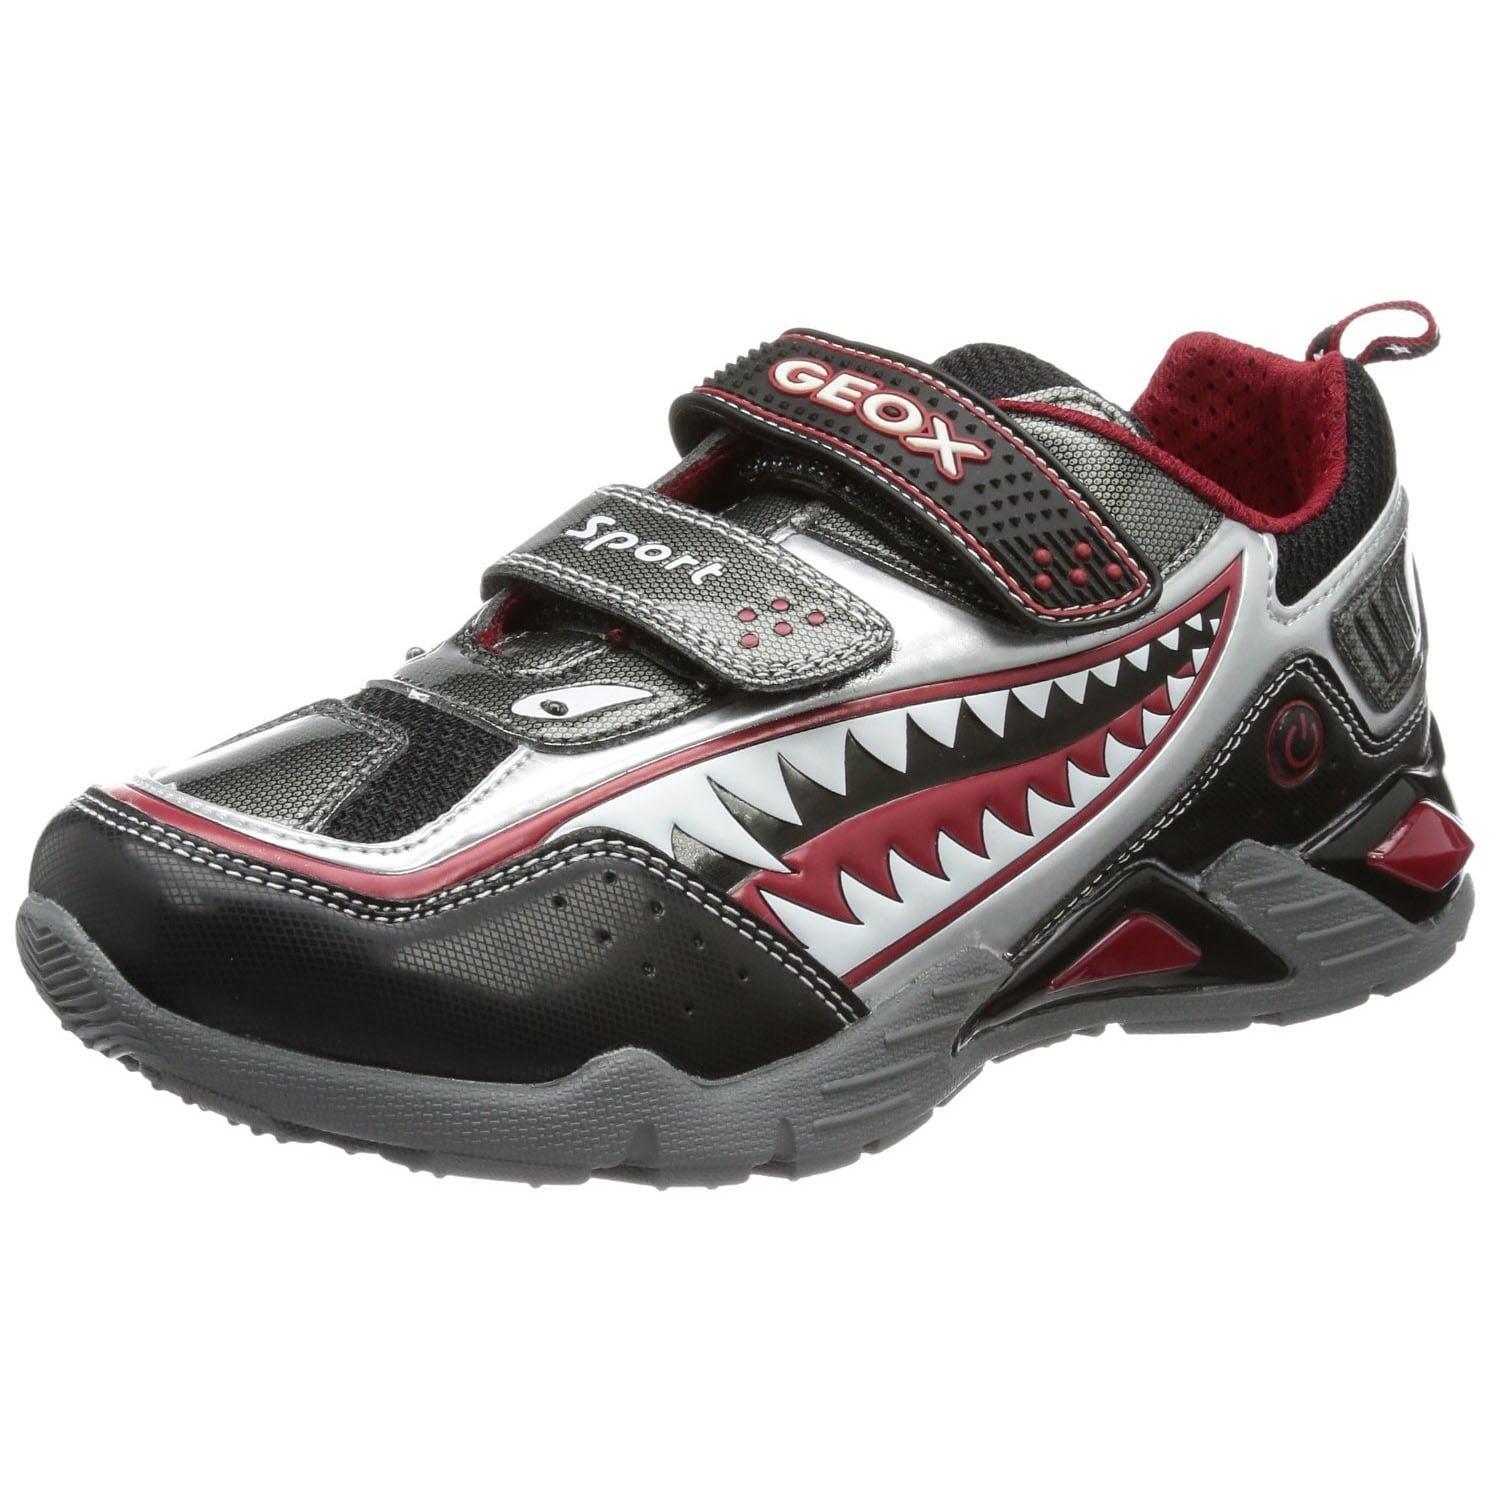 kloon leiderschap moeilijk tevreden te krijgen Geox Boys Supreme Light Fashion Sneakers, Black/Red, 27 - Walmart.com